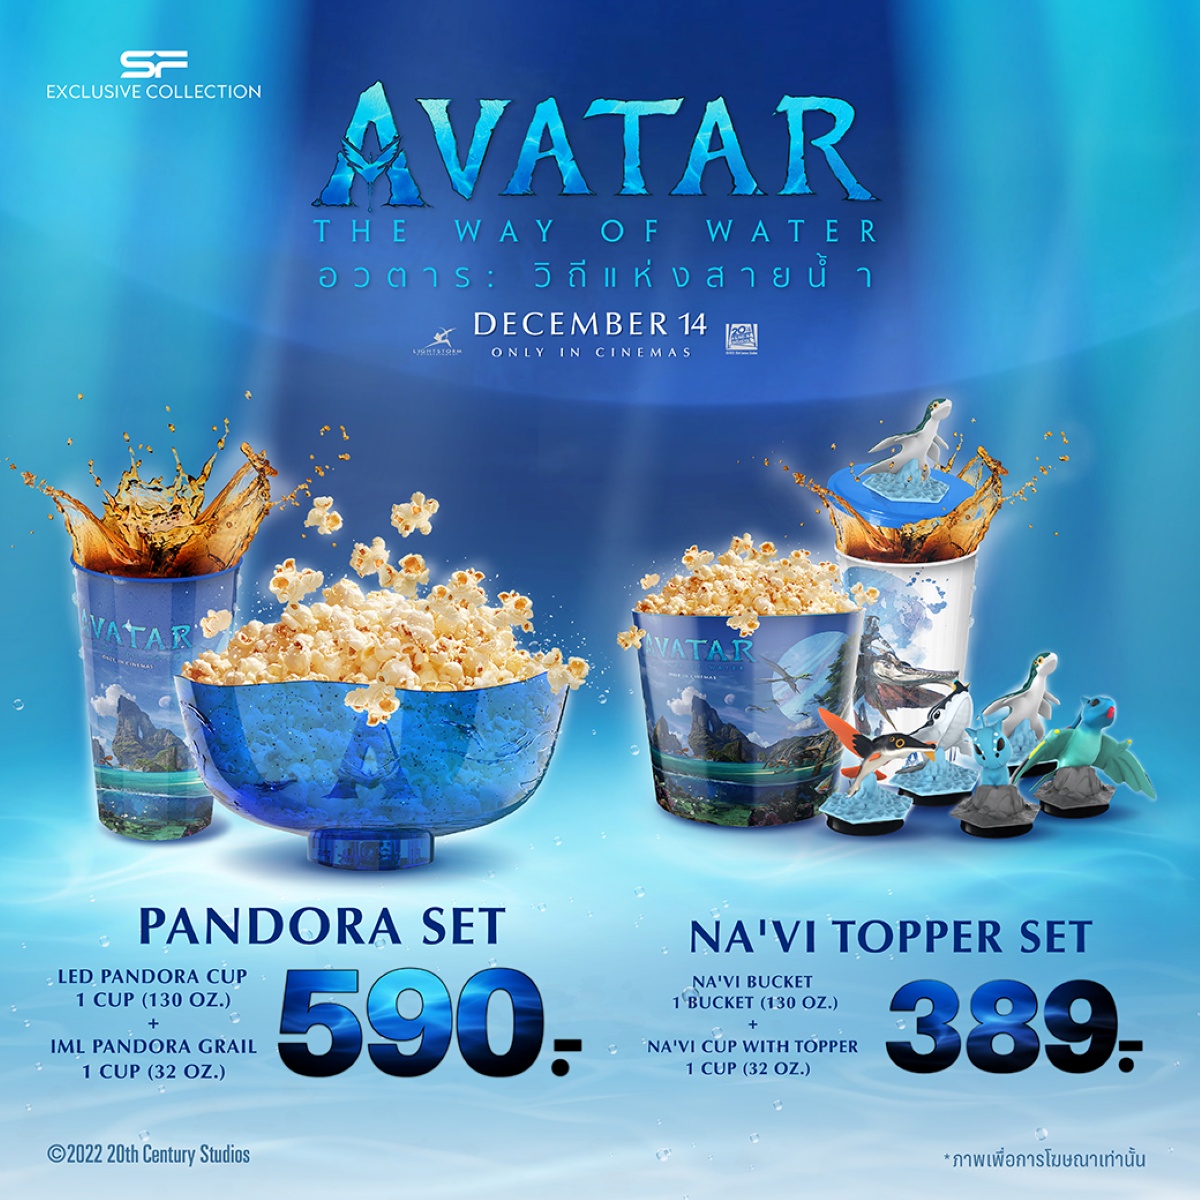 ต้อนรับการกลับมาของมหากาพย์ภาพยนตร์ฟอร์มยักษ์ Avatar : The Way of Water กับชุดคอมโบ เซท สุดเอ็กซ์คลูซีฟ AVATAR 2 COMBO SET ที่ เอส เอฟ